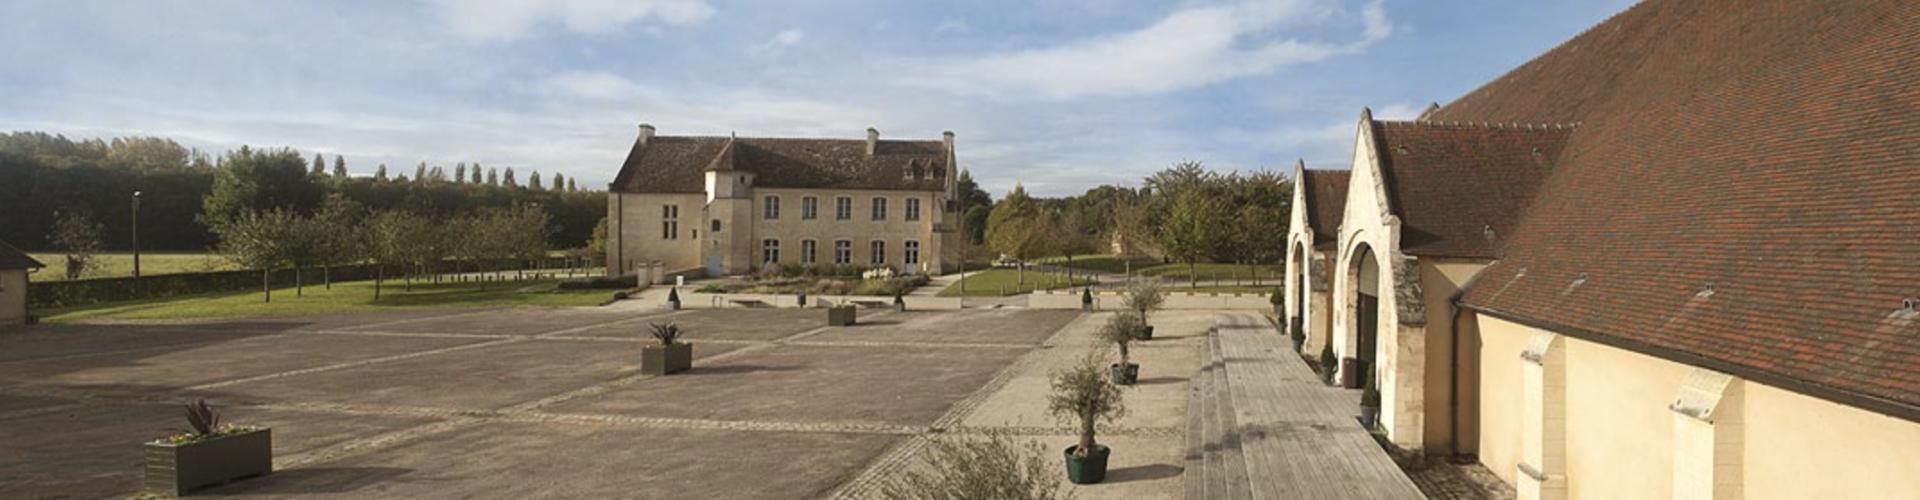 Domaine de la Baronnie - Lieu de réception pour votre mariage - (Bretteville sur Odon, Calvados)  - Prestataire de Mariage en Normandie